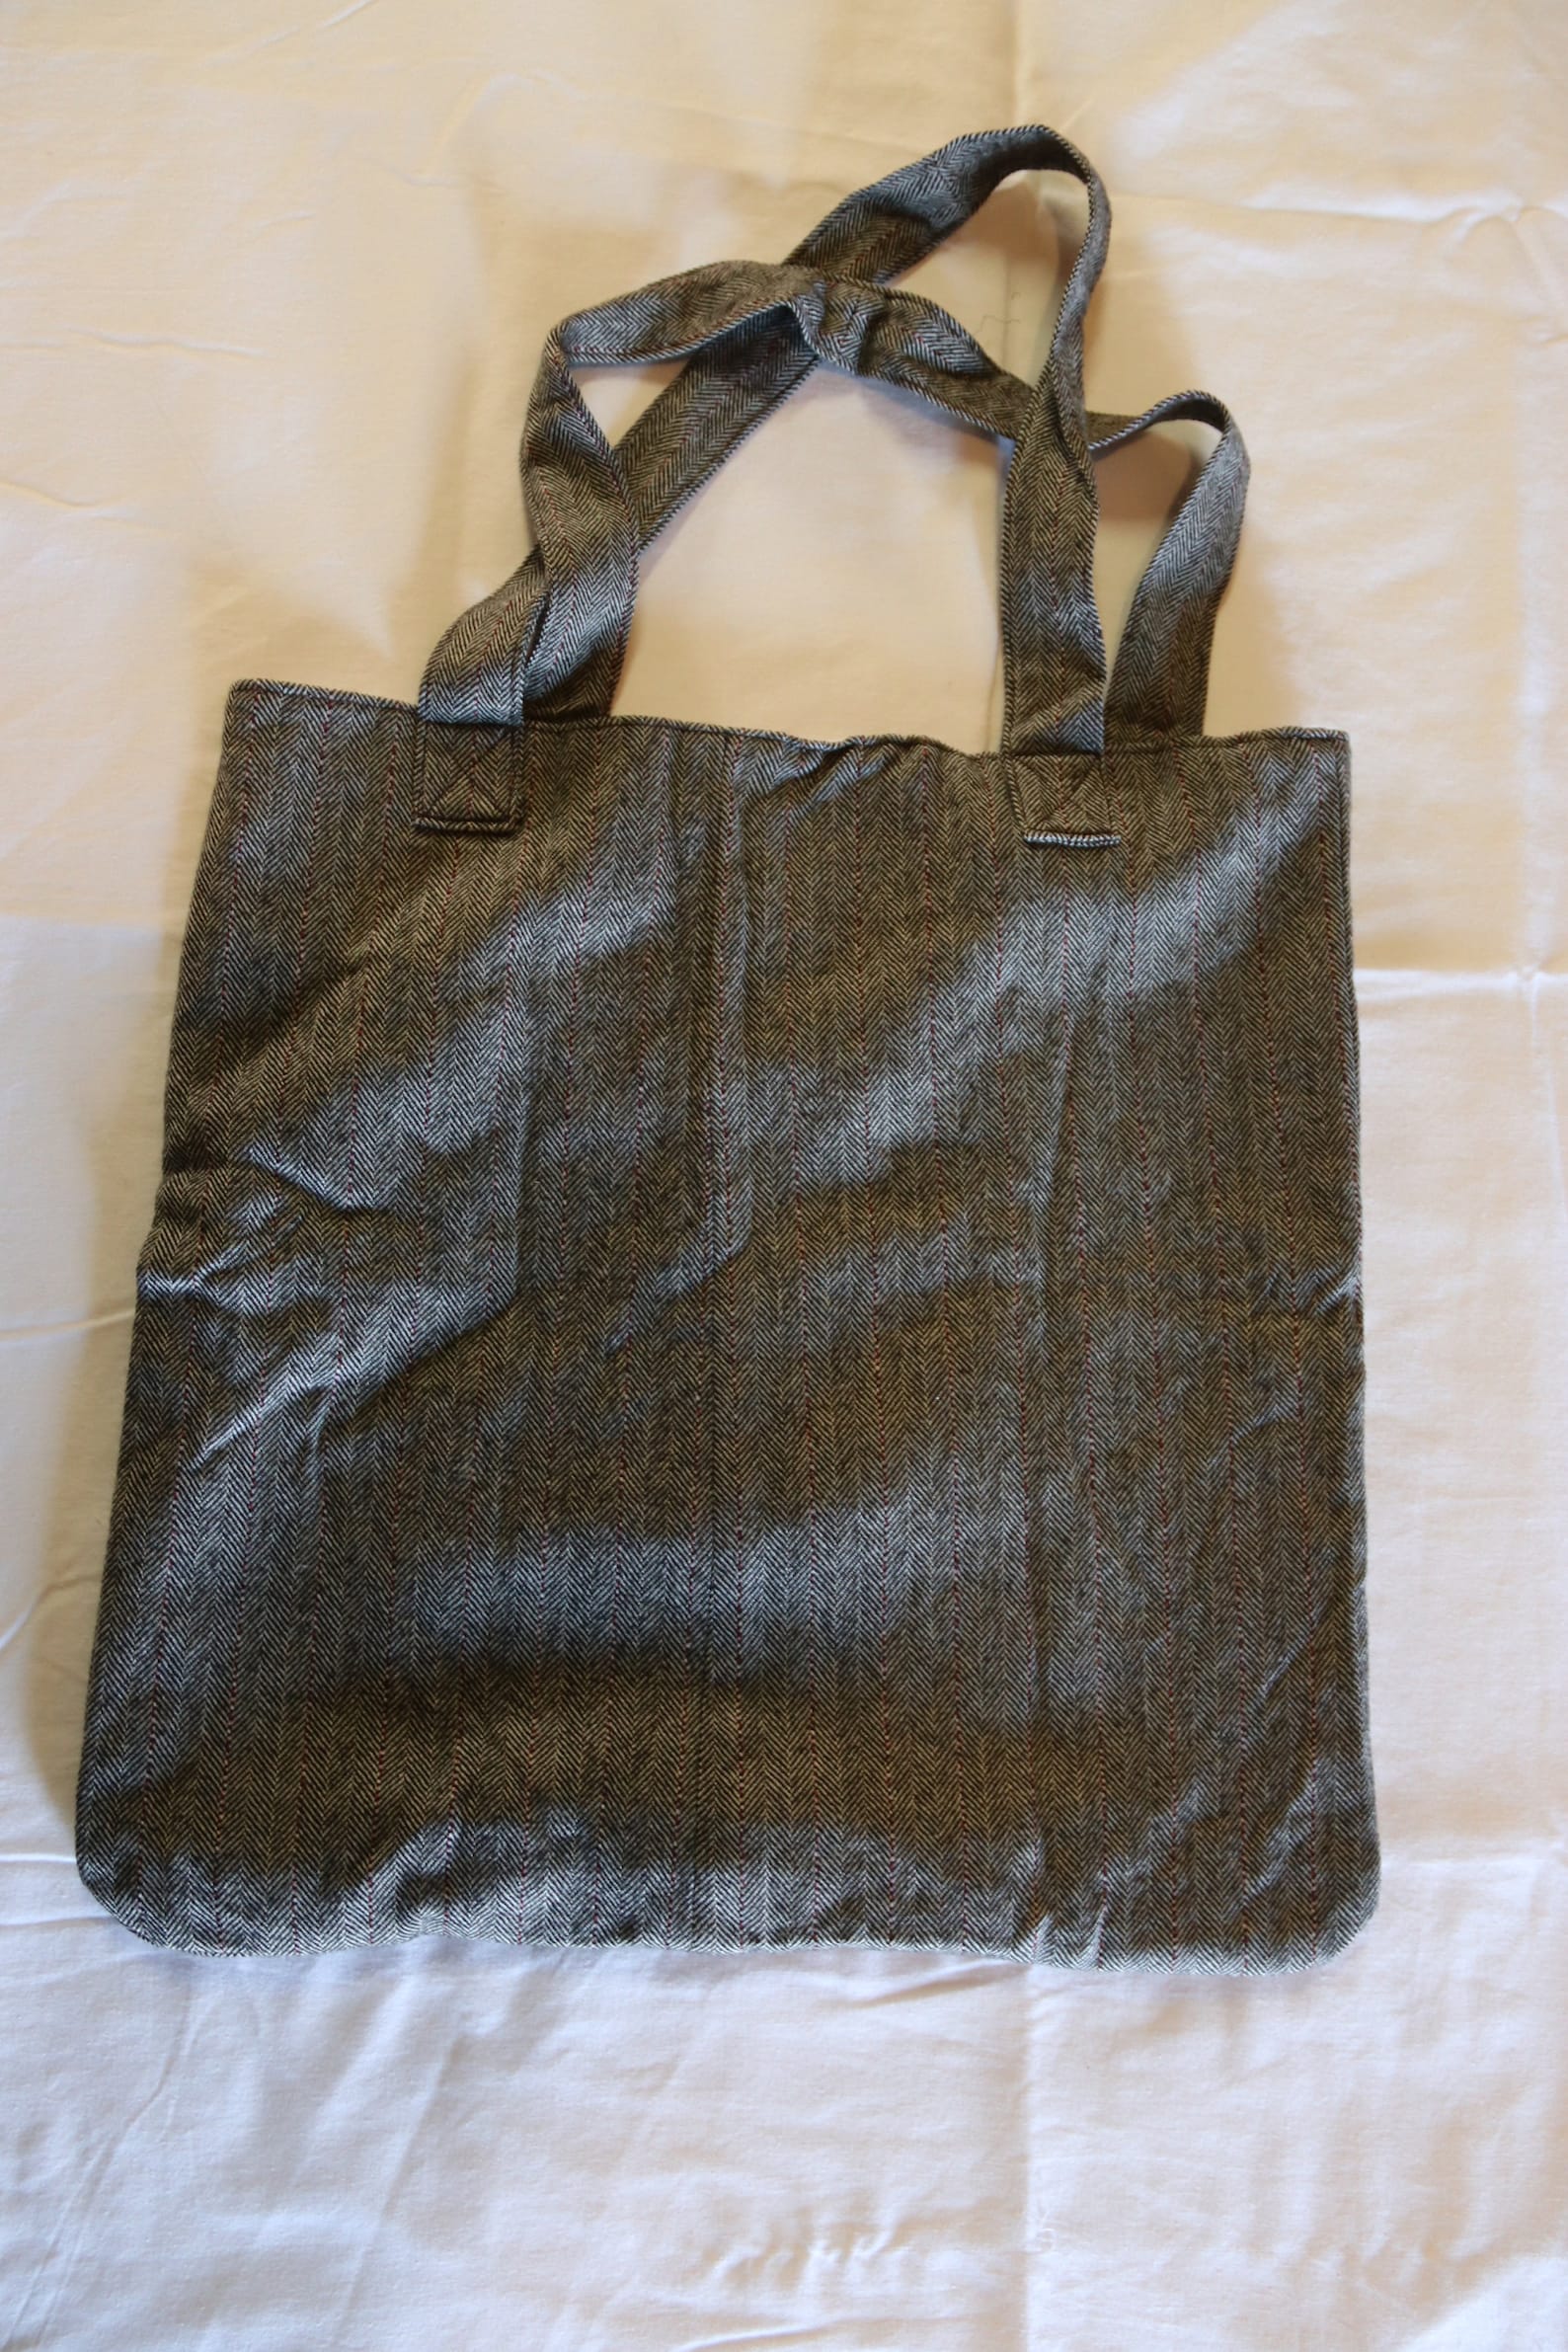 Large sturdy shoulder bag with front pocket | Etsy